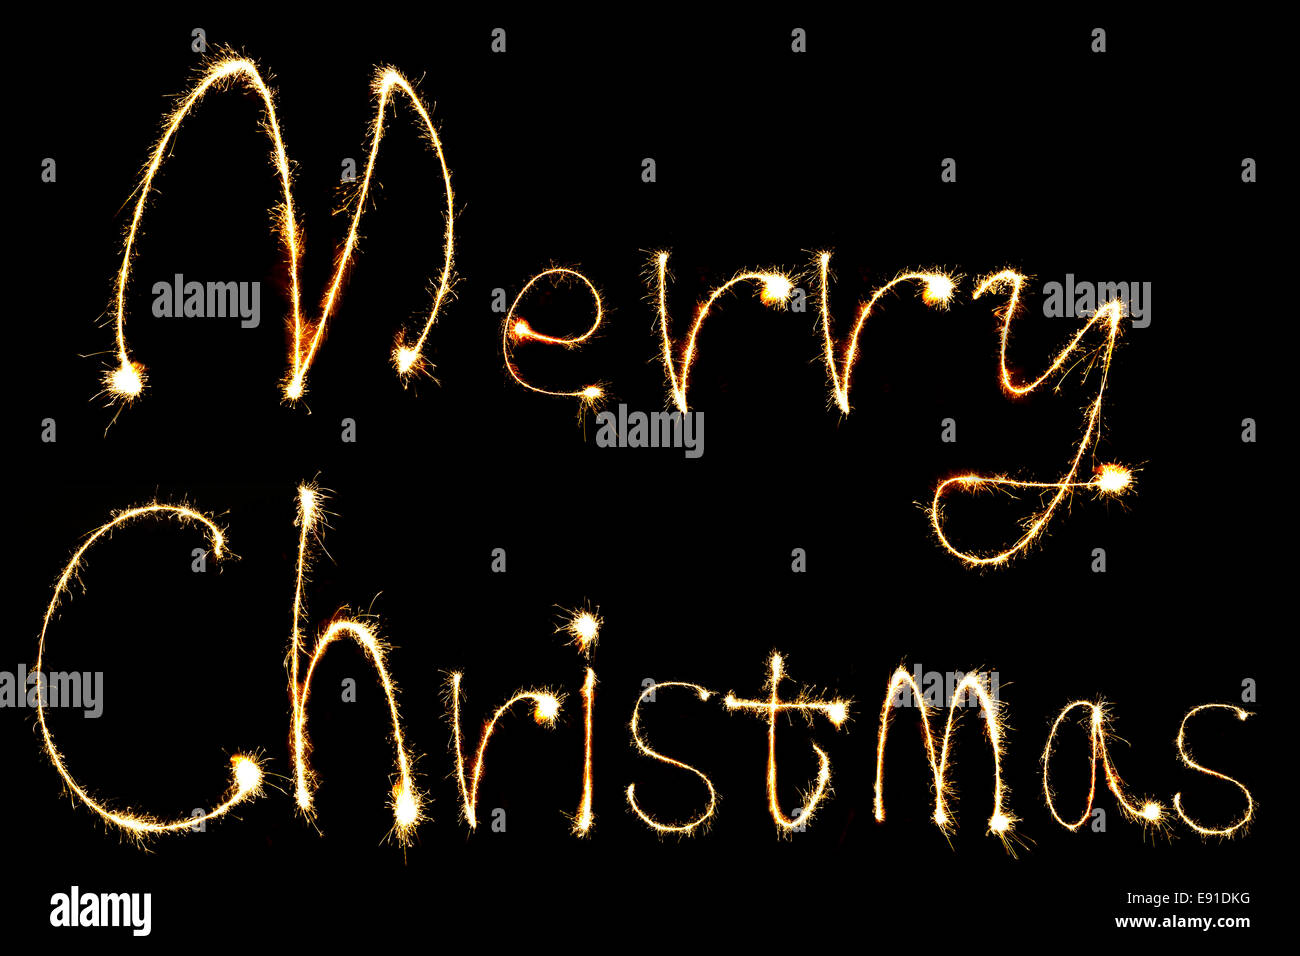 Burning sparkler stick e scrittura Merry Chistmas scintillante parole su sfondo nero Foto Stock